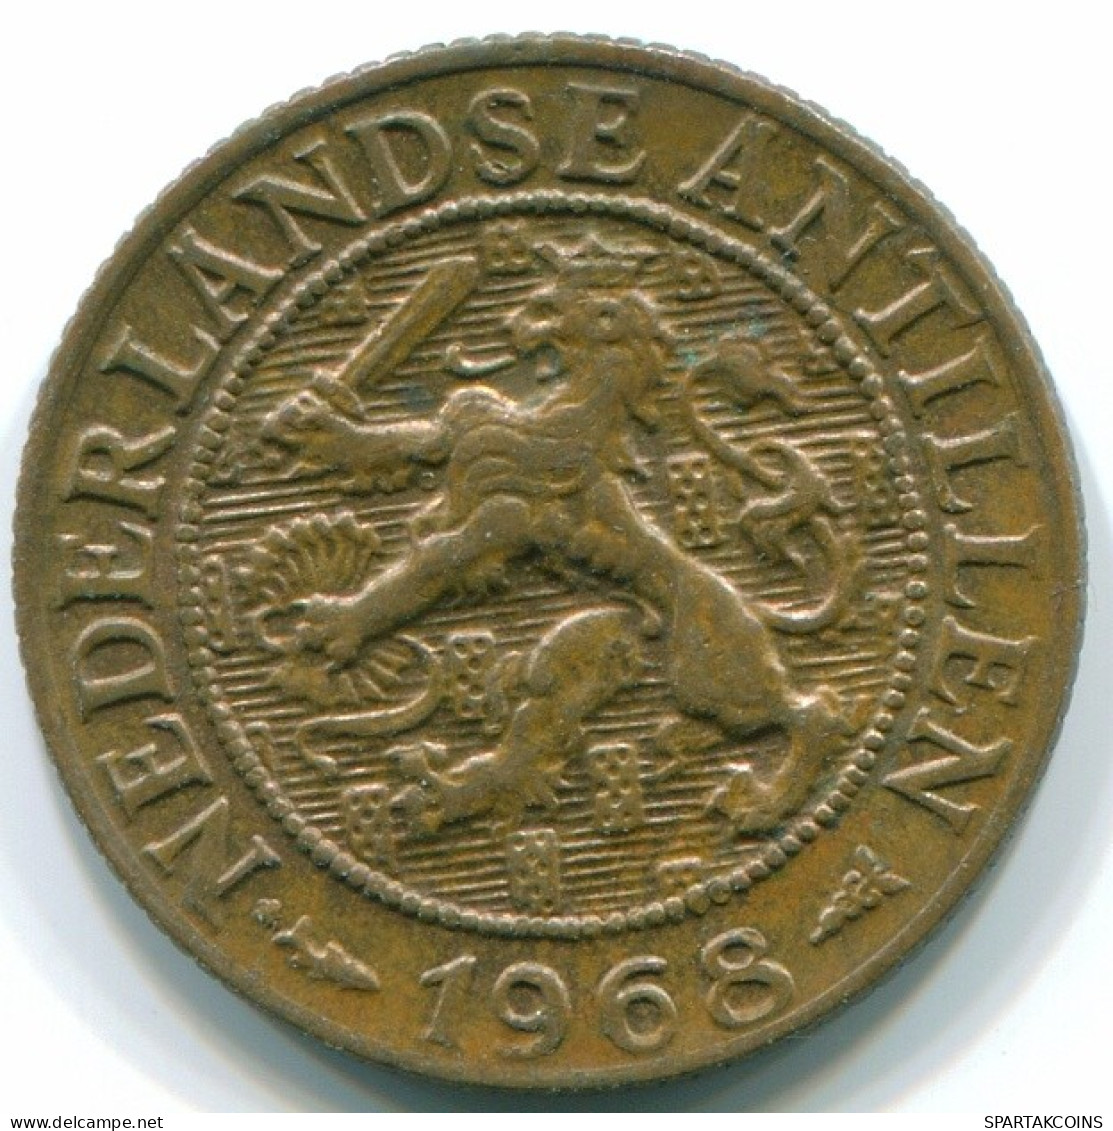 1 CENT 1968 NIEDERLÄNDISCHE ANTILLEN Bronze Fish Koloniale Münze #S10782.D.A - Niederländische Antillen